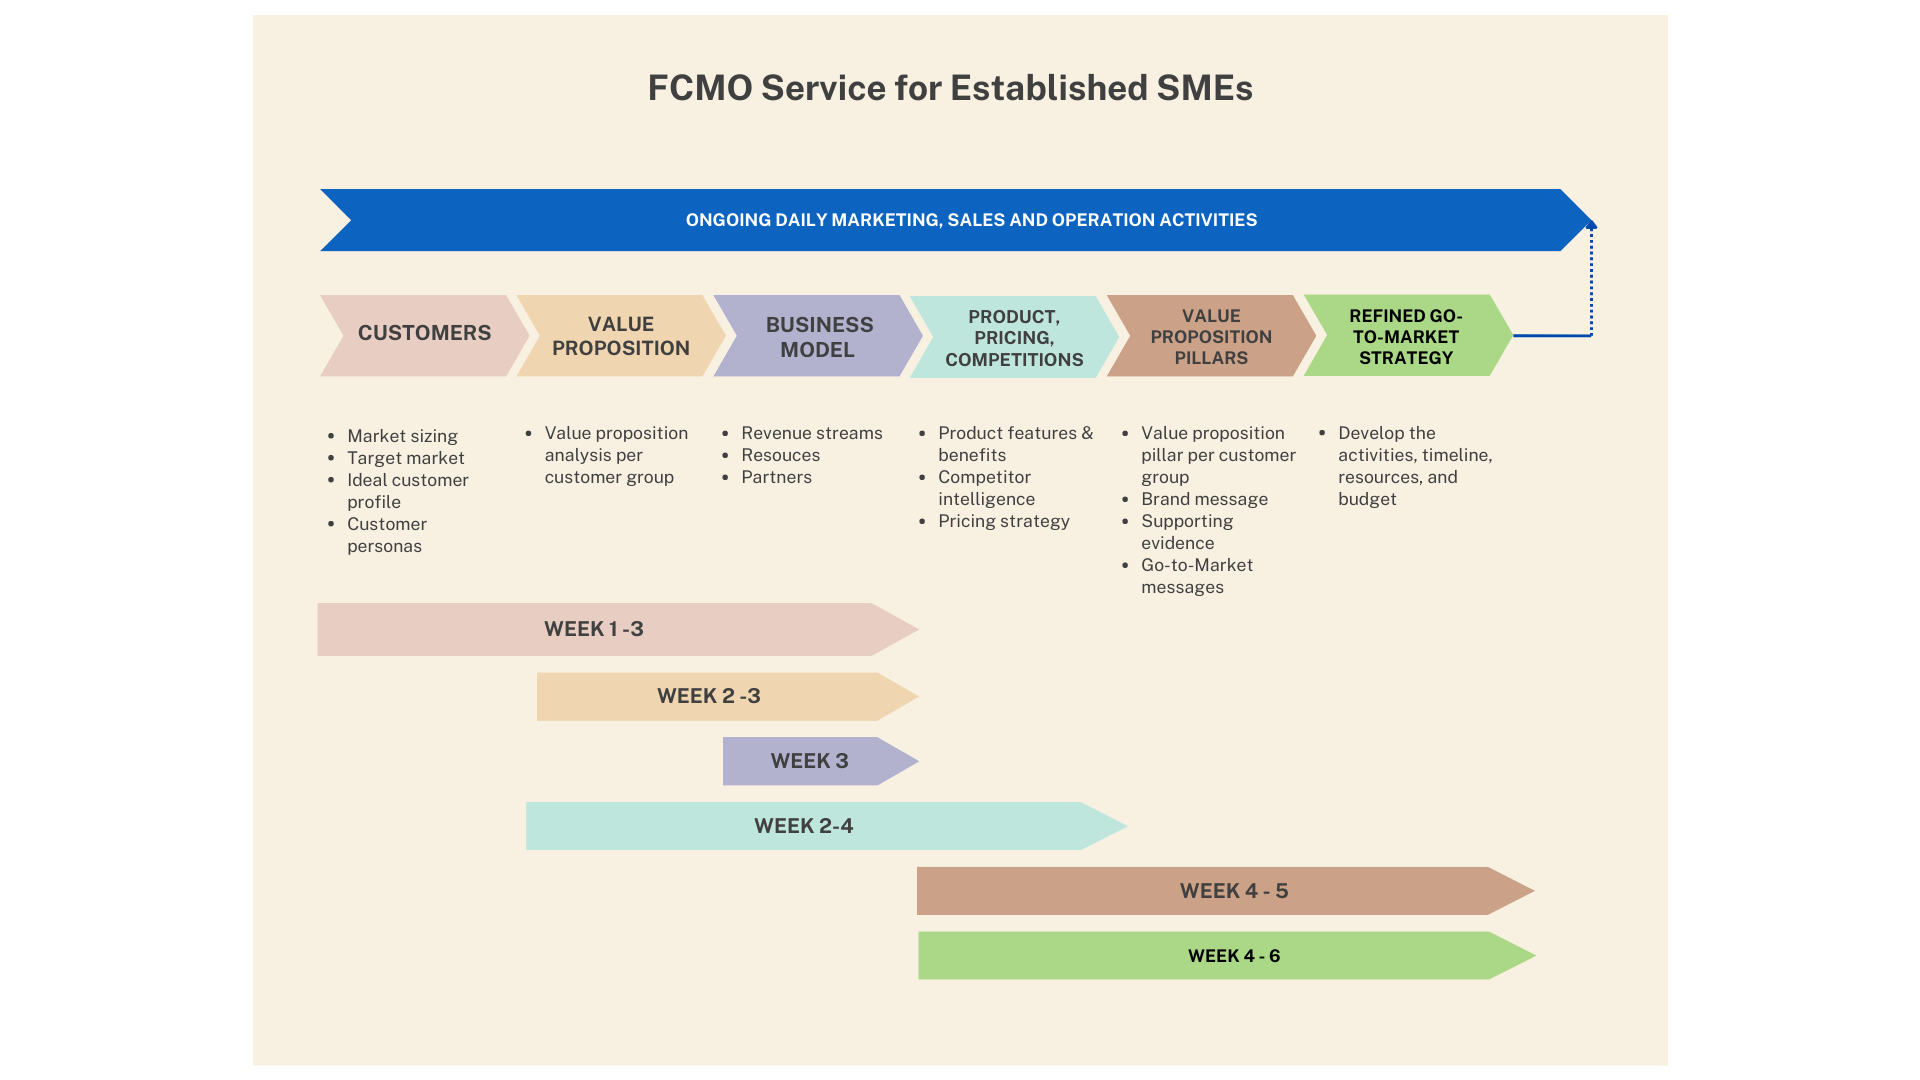 gigCMO - FCMO SME Roadmap